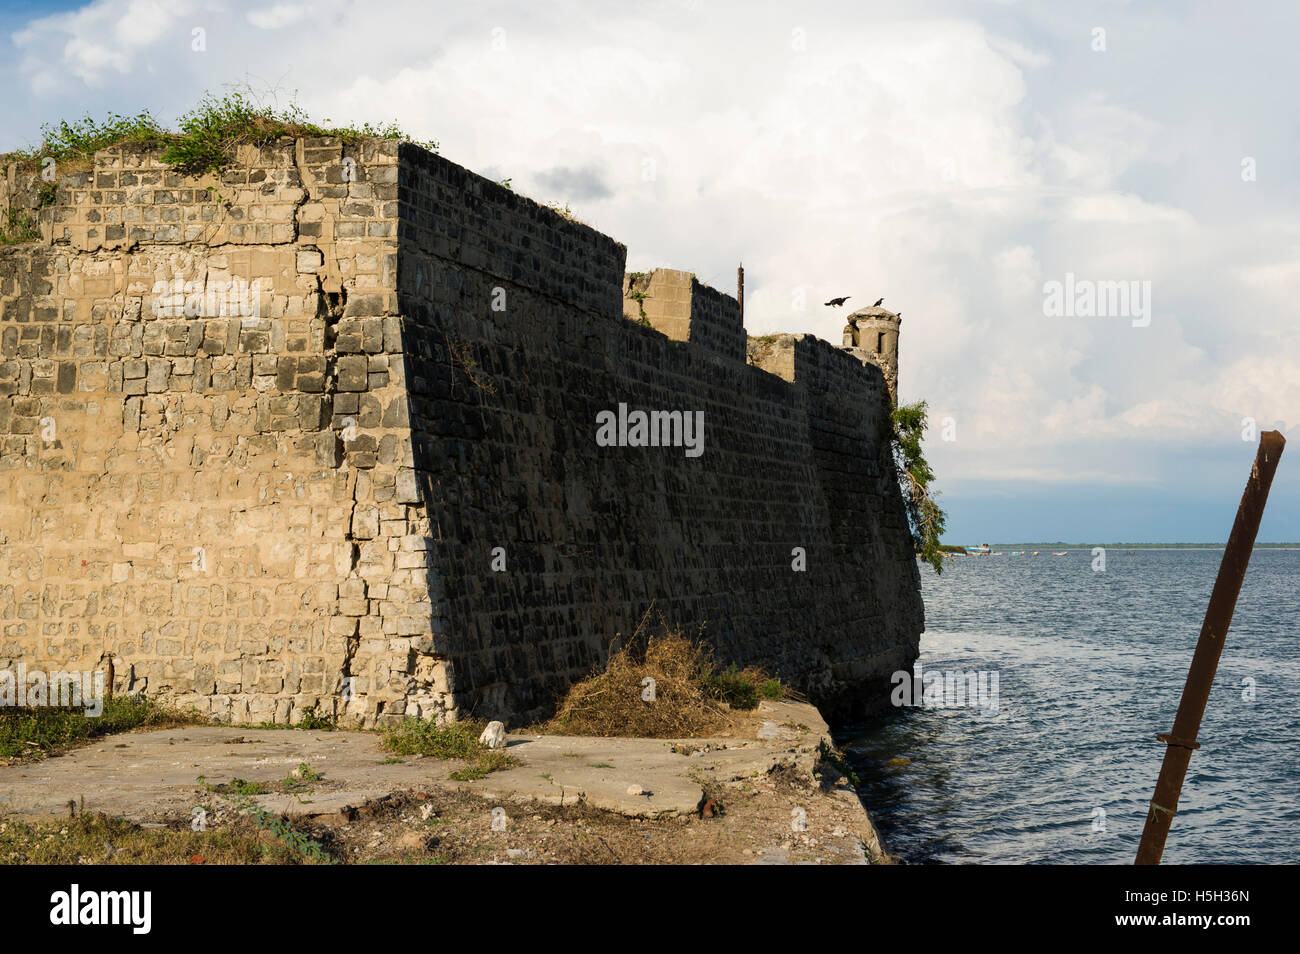 Ruines du Fort de Mannar, construit par les Portugais en 1560 et reconstruite plus tard par les Hollandais, Mannar, Sri Lanka Banque D'Images